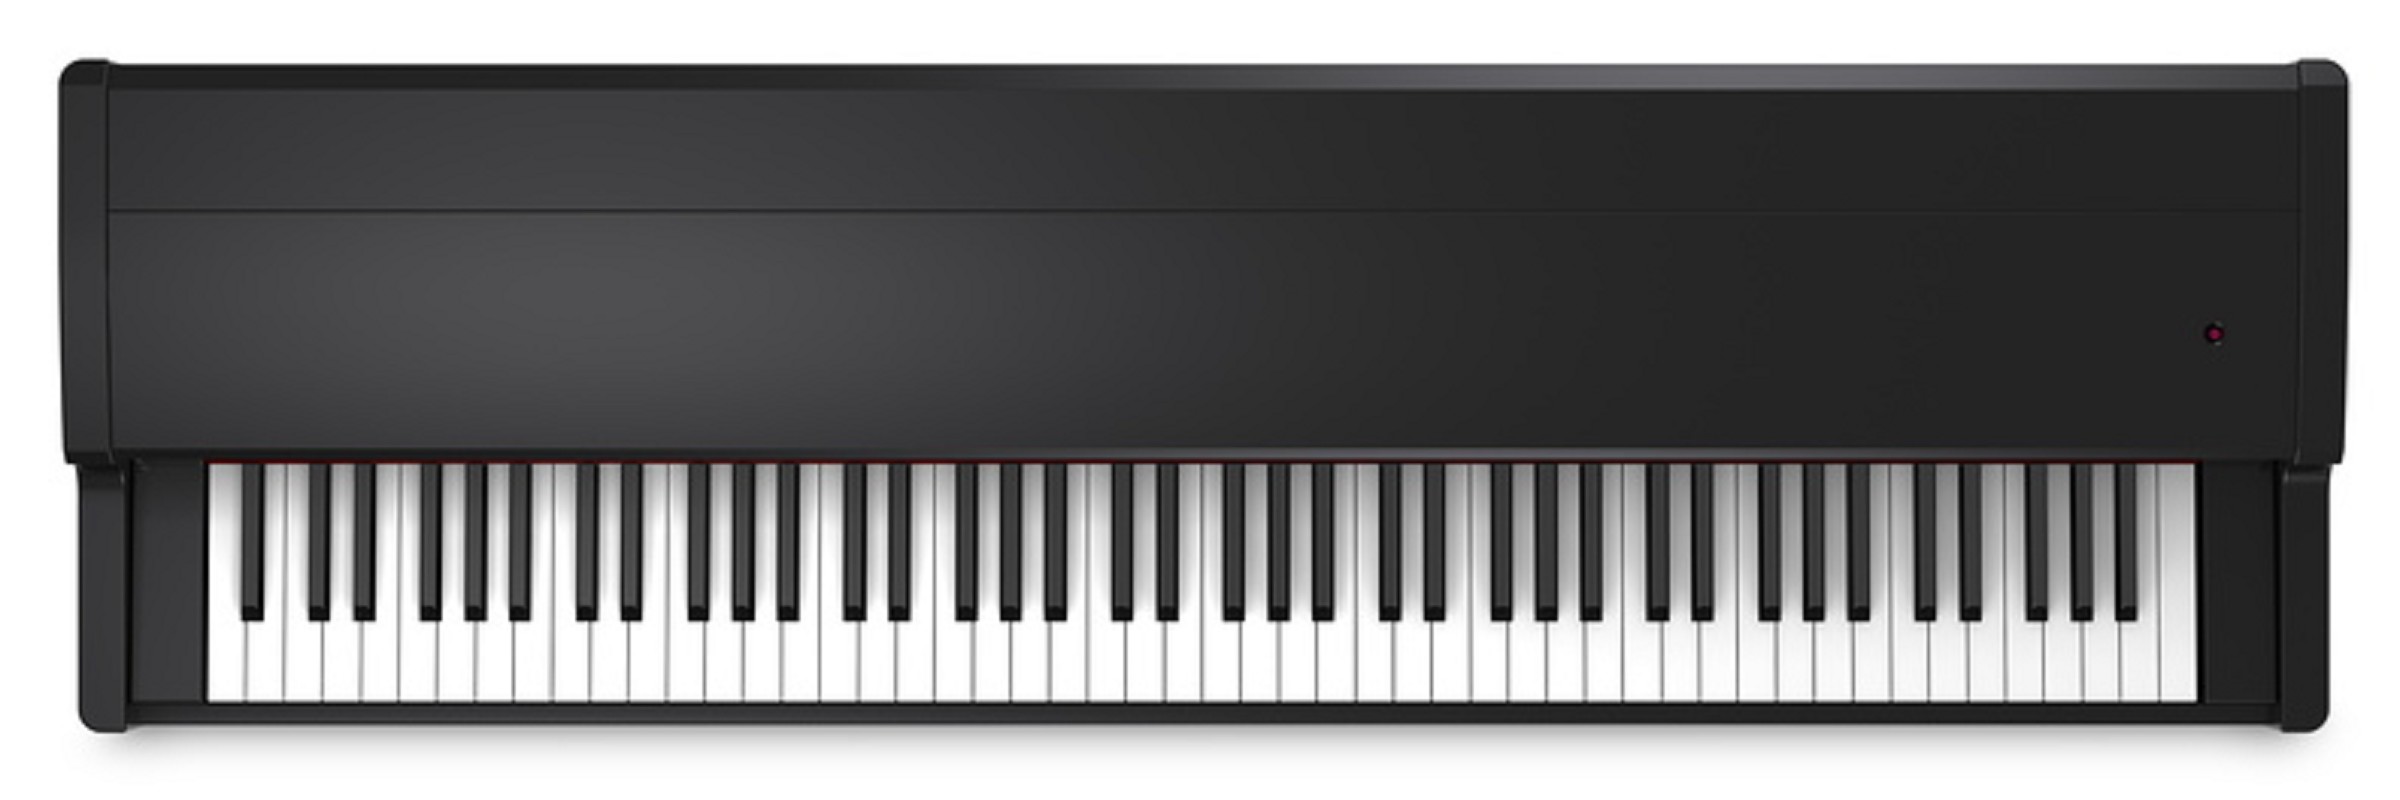 Kawai VPC-1 MIDI Keyboard schwarz